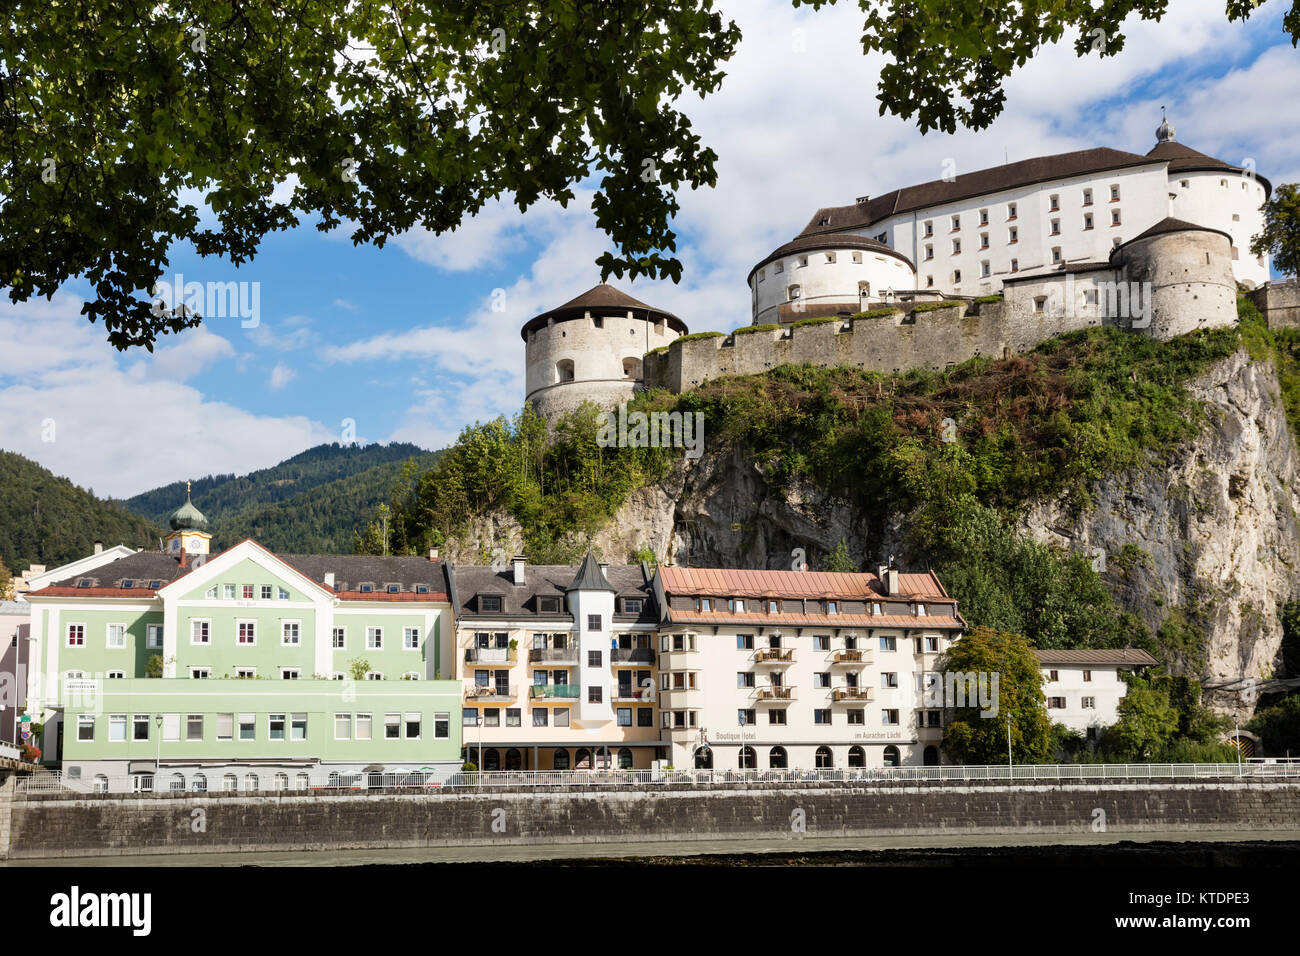 Austria, Tyrol, Kufstein, Old town, Kufstein Fortress Stock Photo